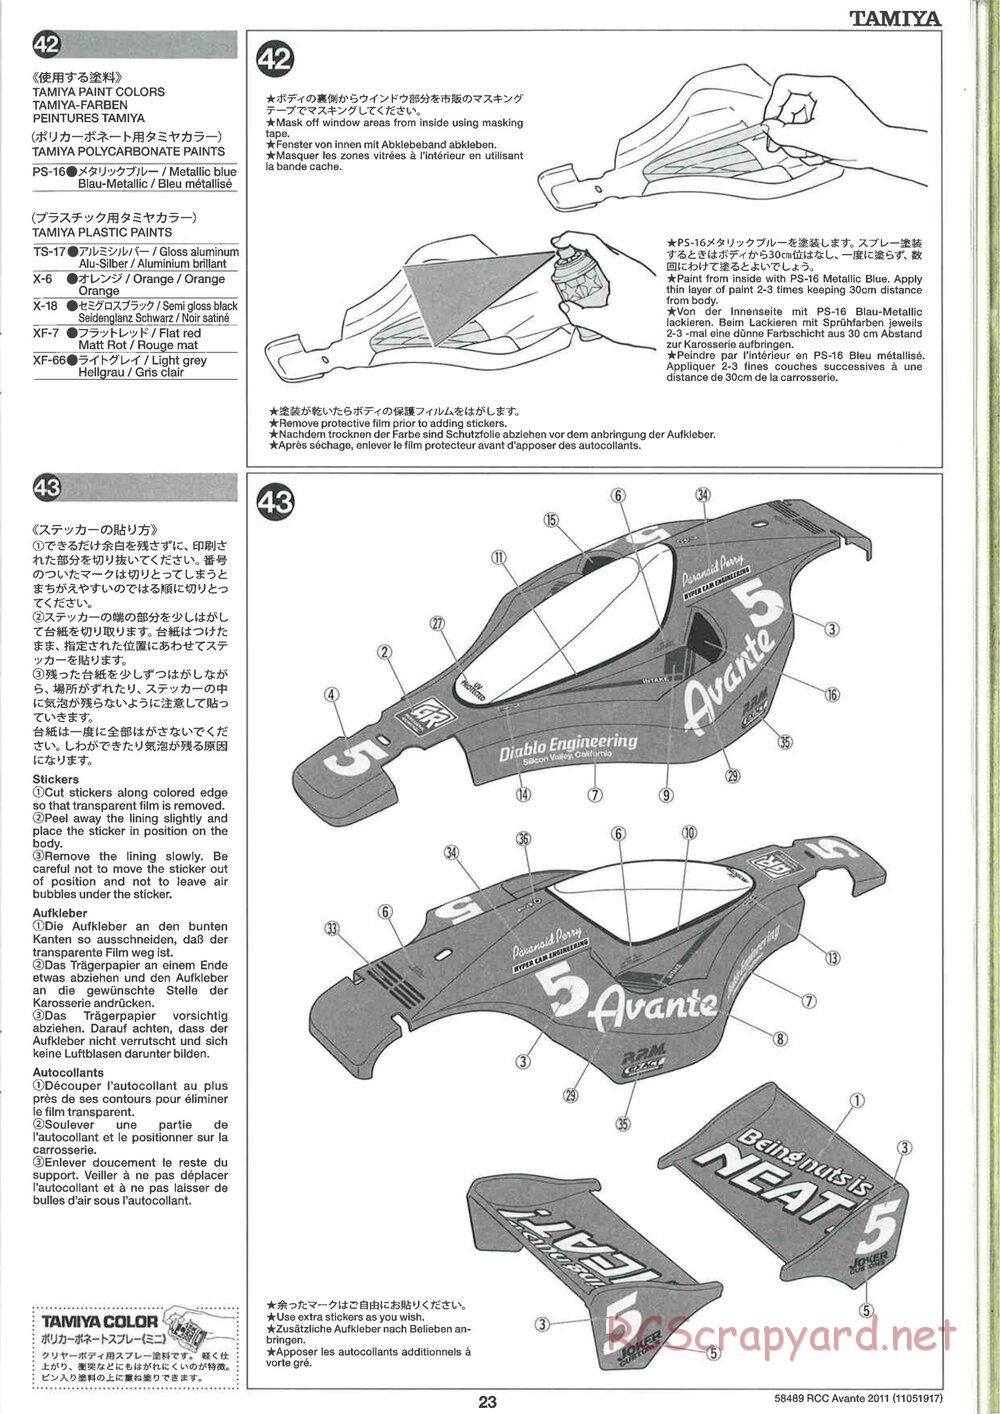 Tamiya - Avante 2011 - AV Chassis - Manual - Page 23